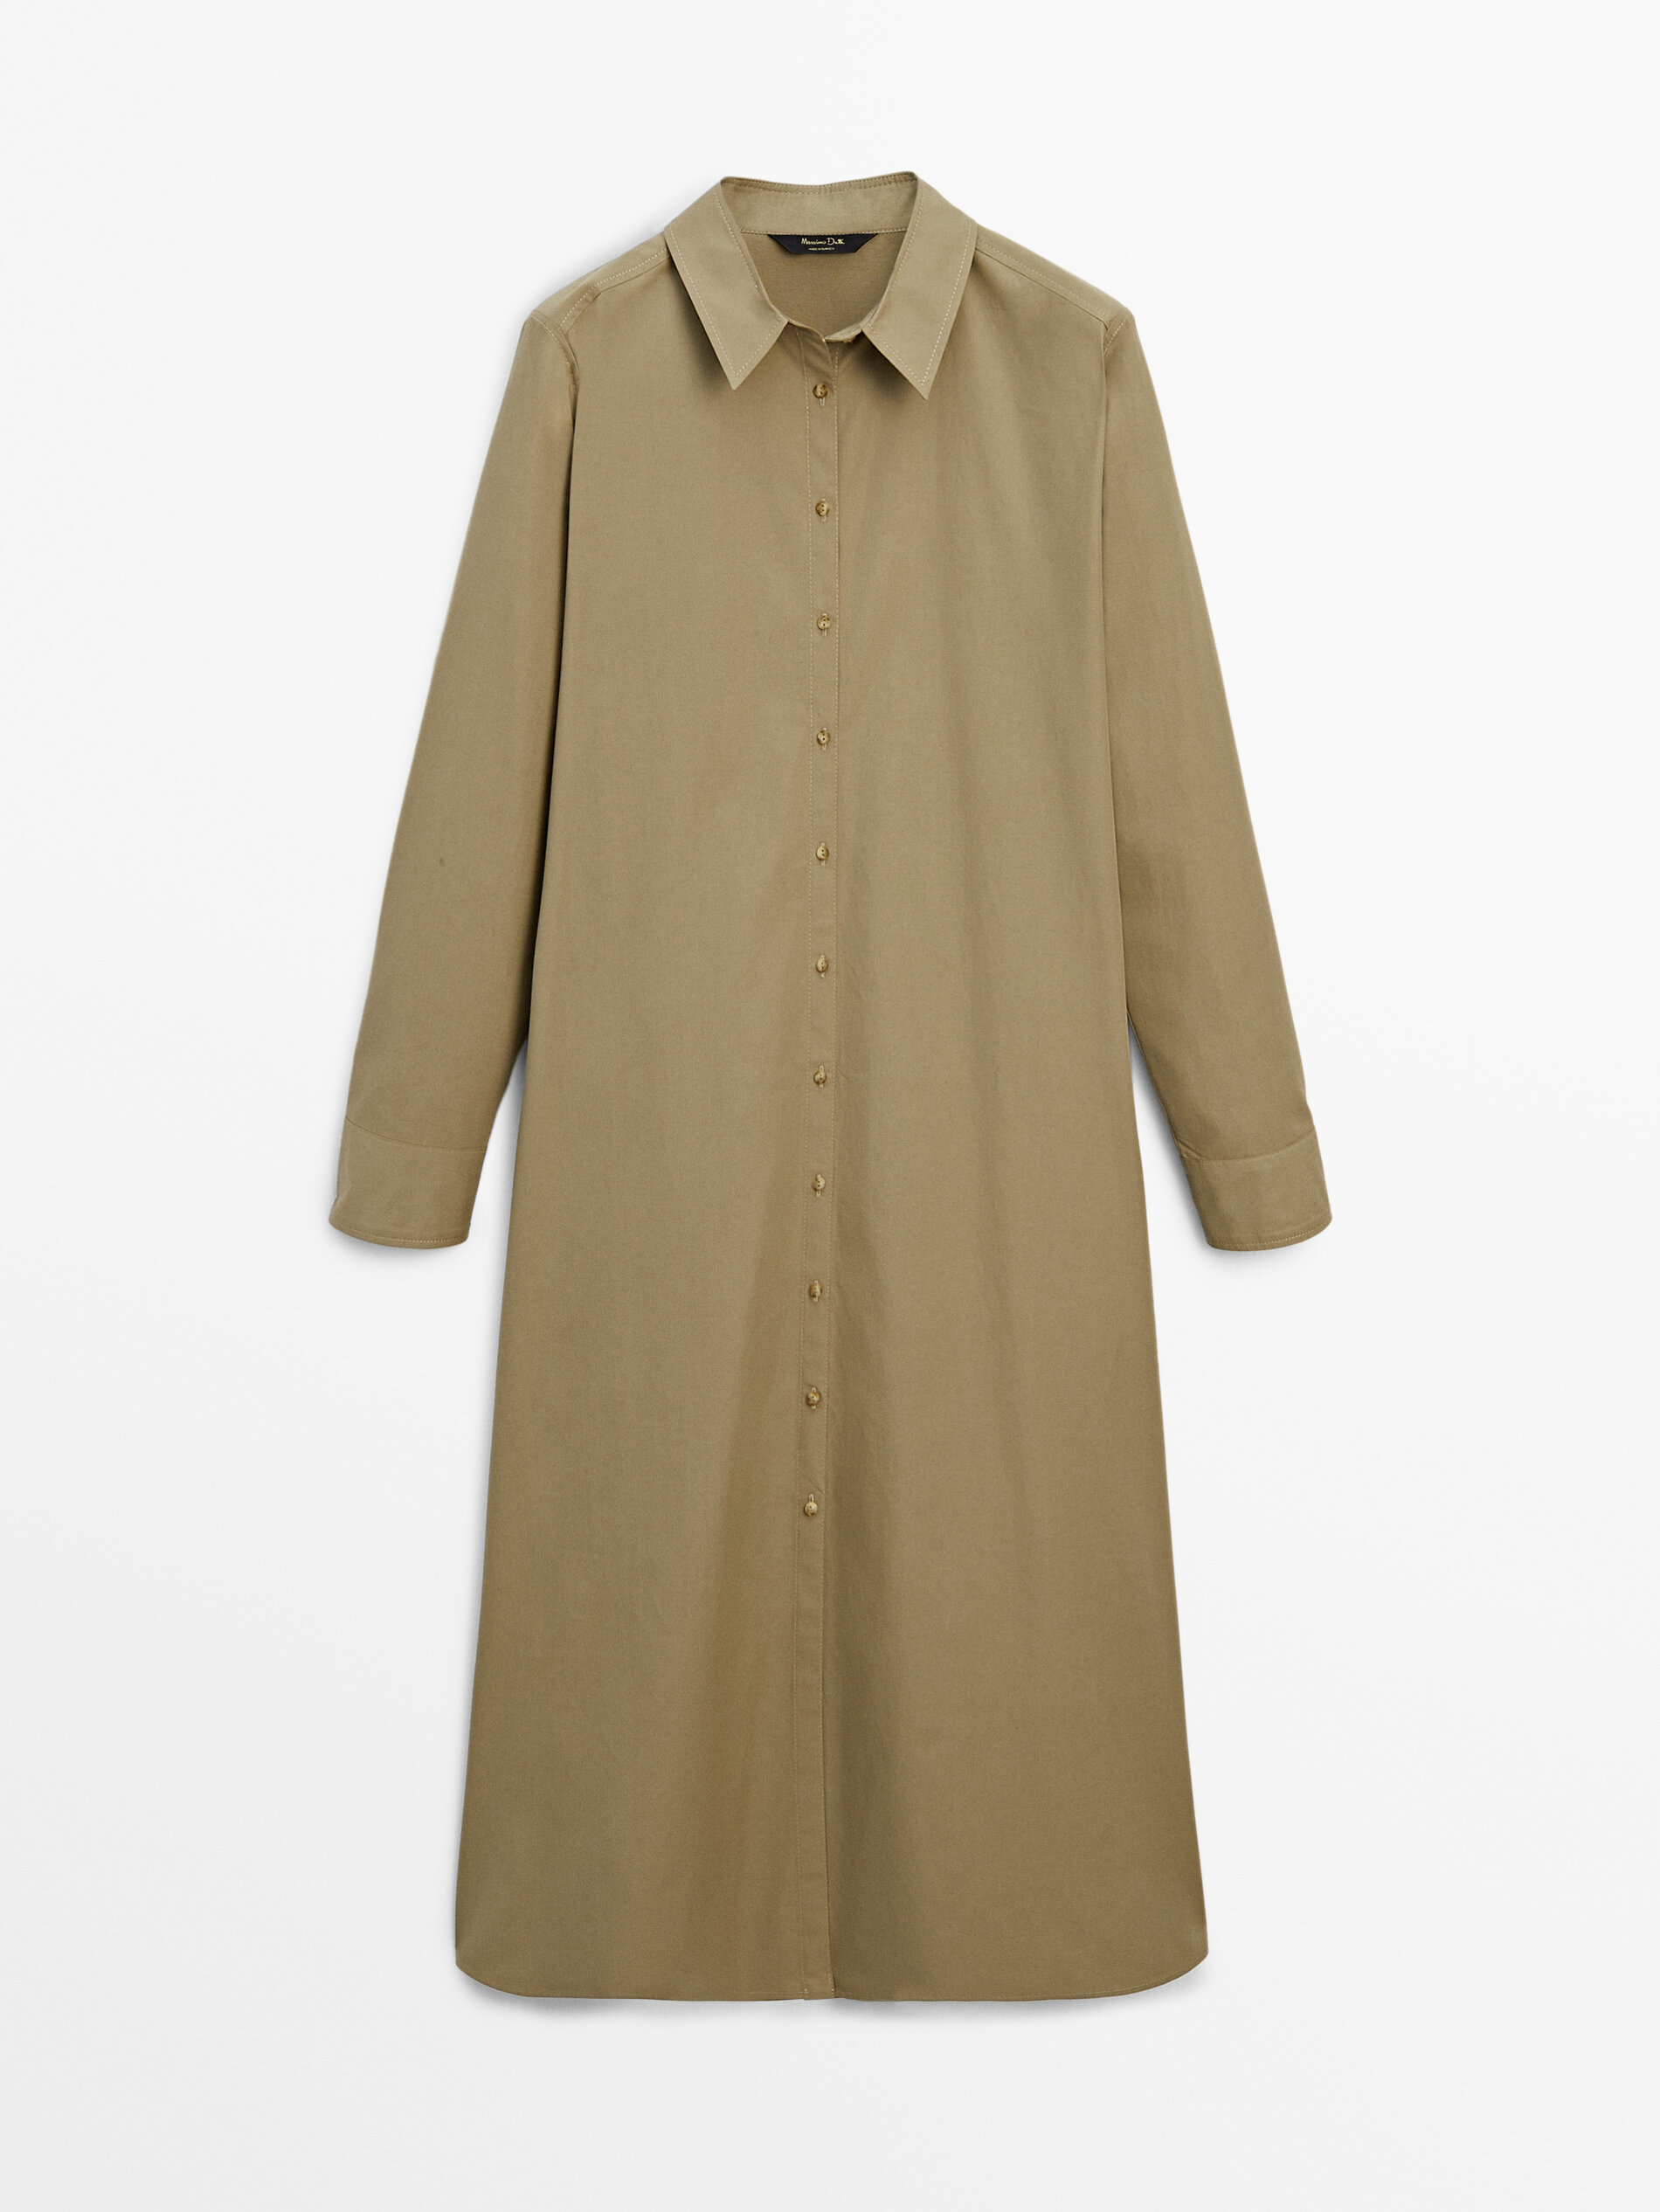 Renueva tu armario con el vestido midi camisero de Massimo Dutti que te har sentir fabulosa a los 60 aos